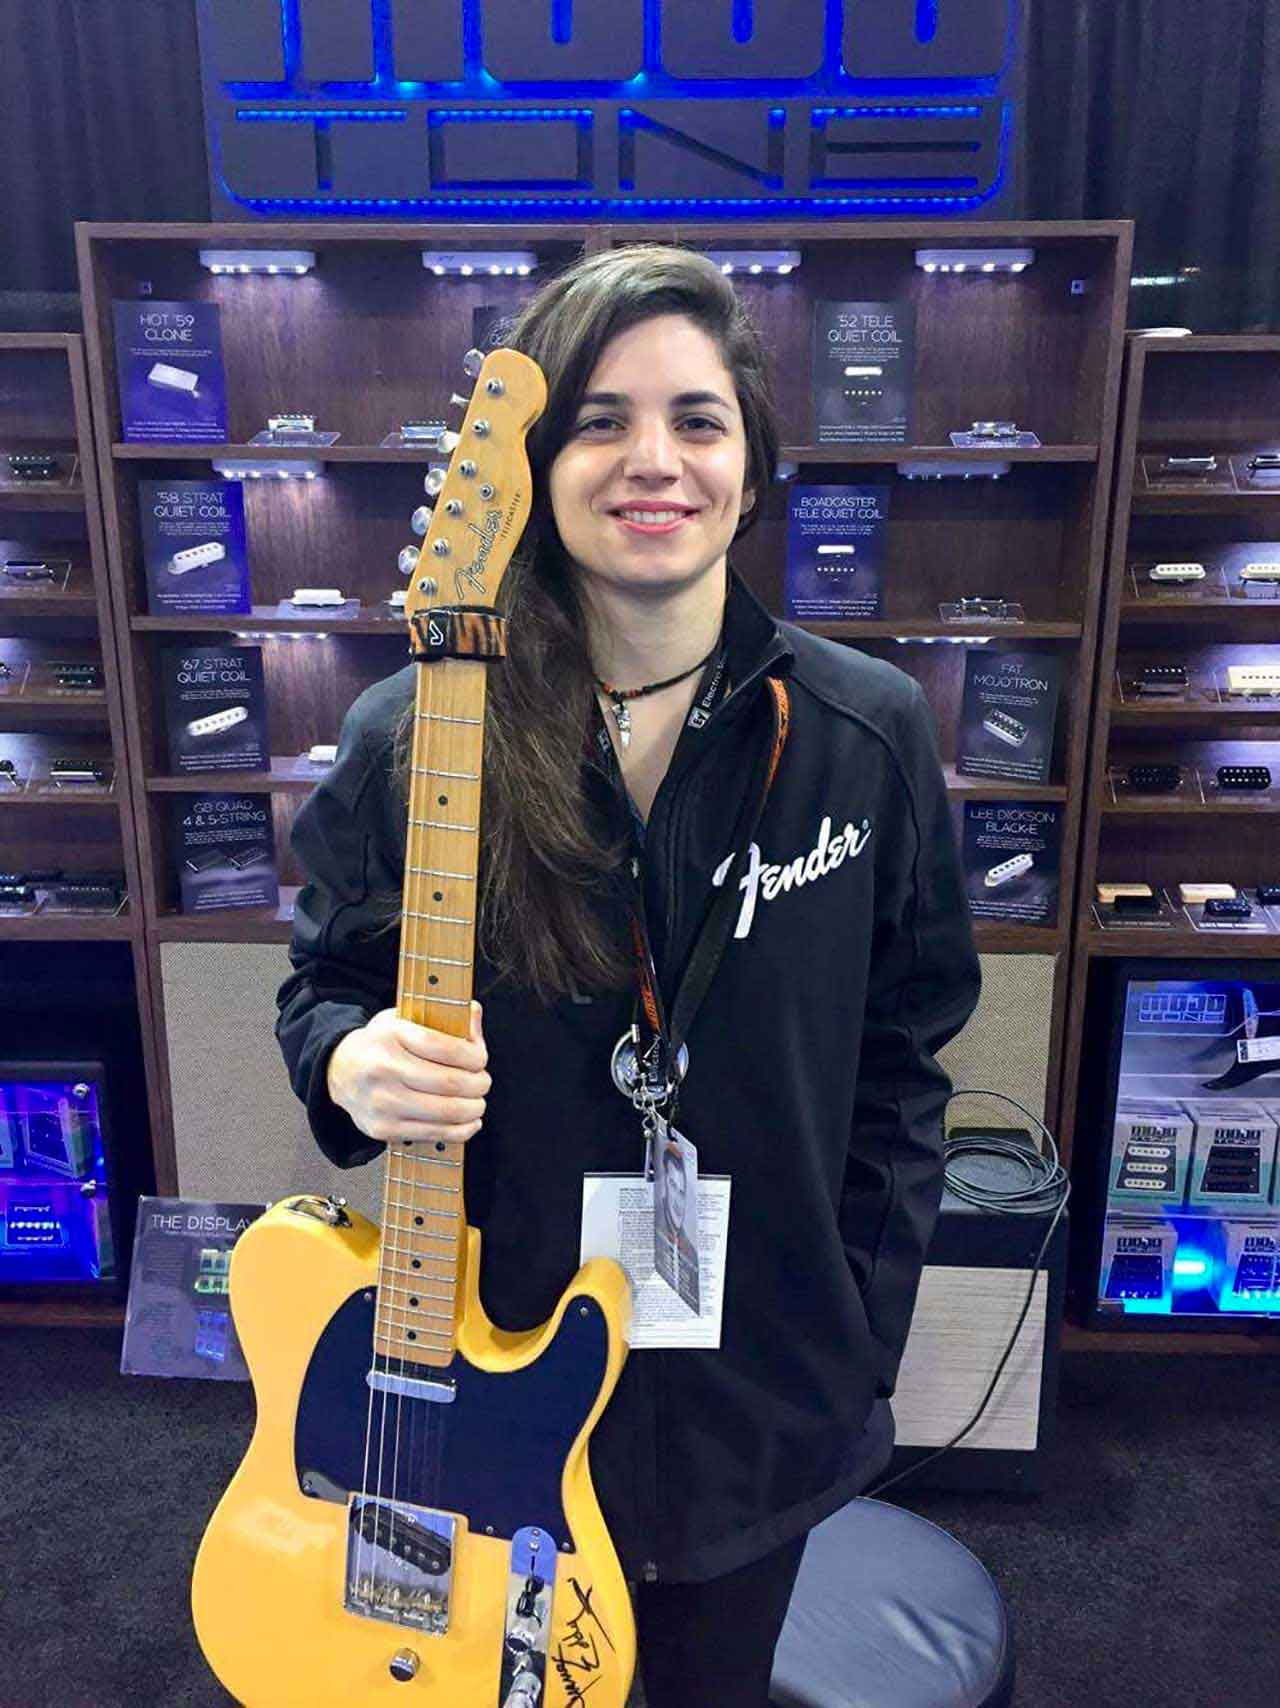 Cynthia Maalouf Giménez joined Luthiers.com